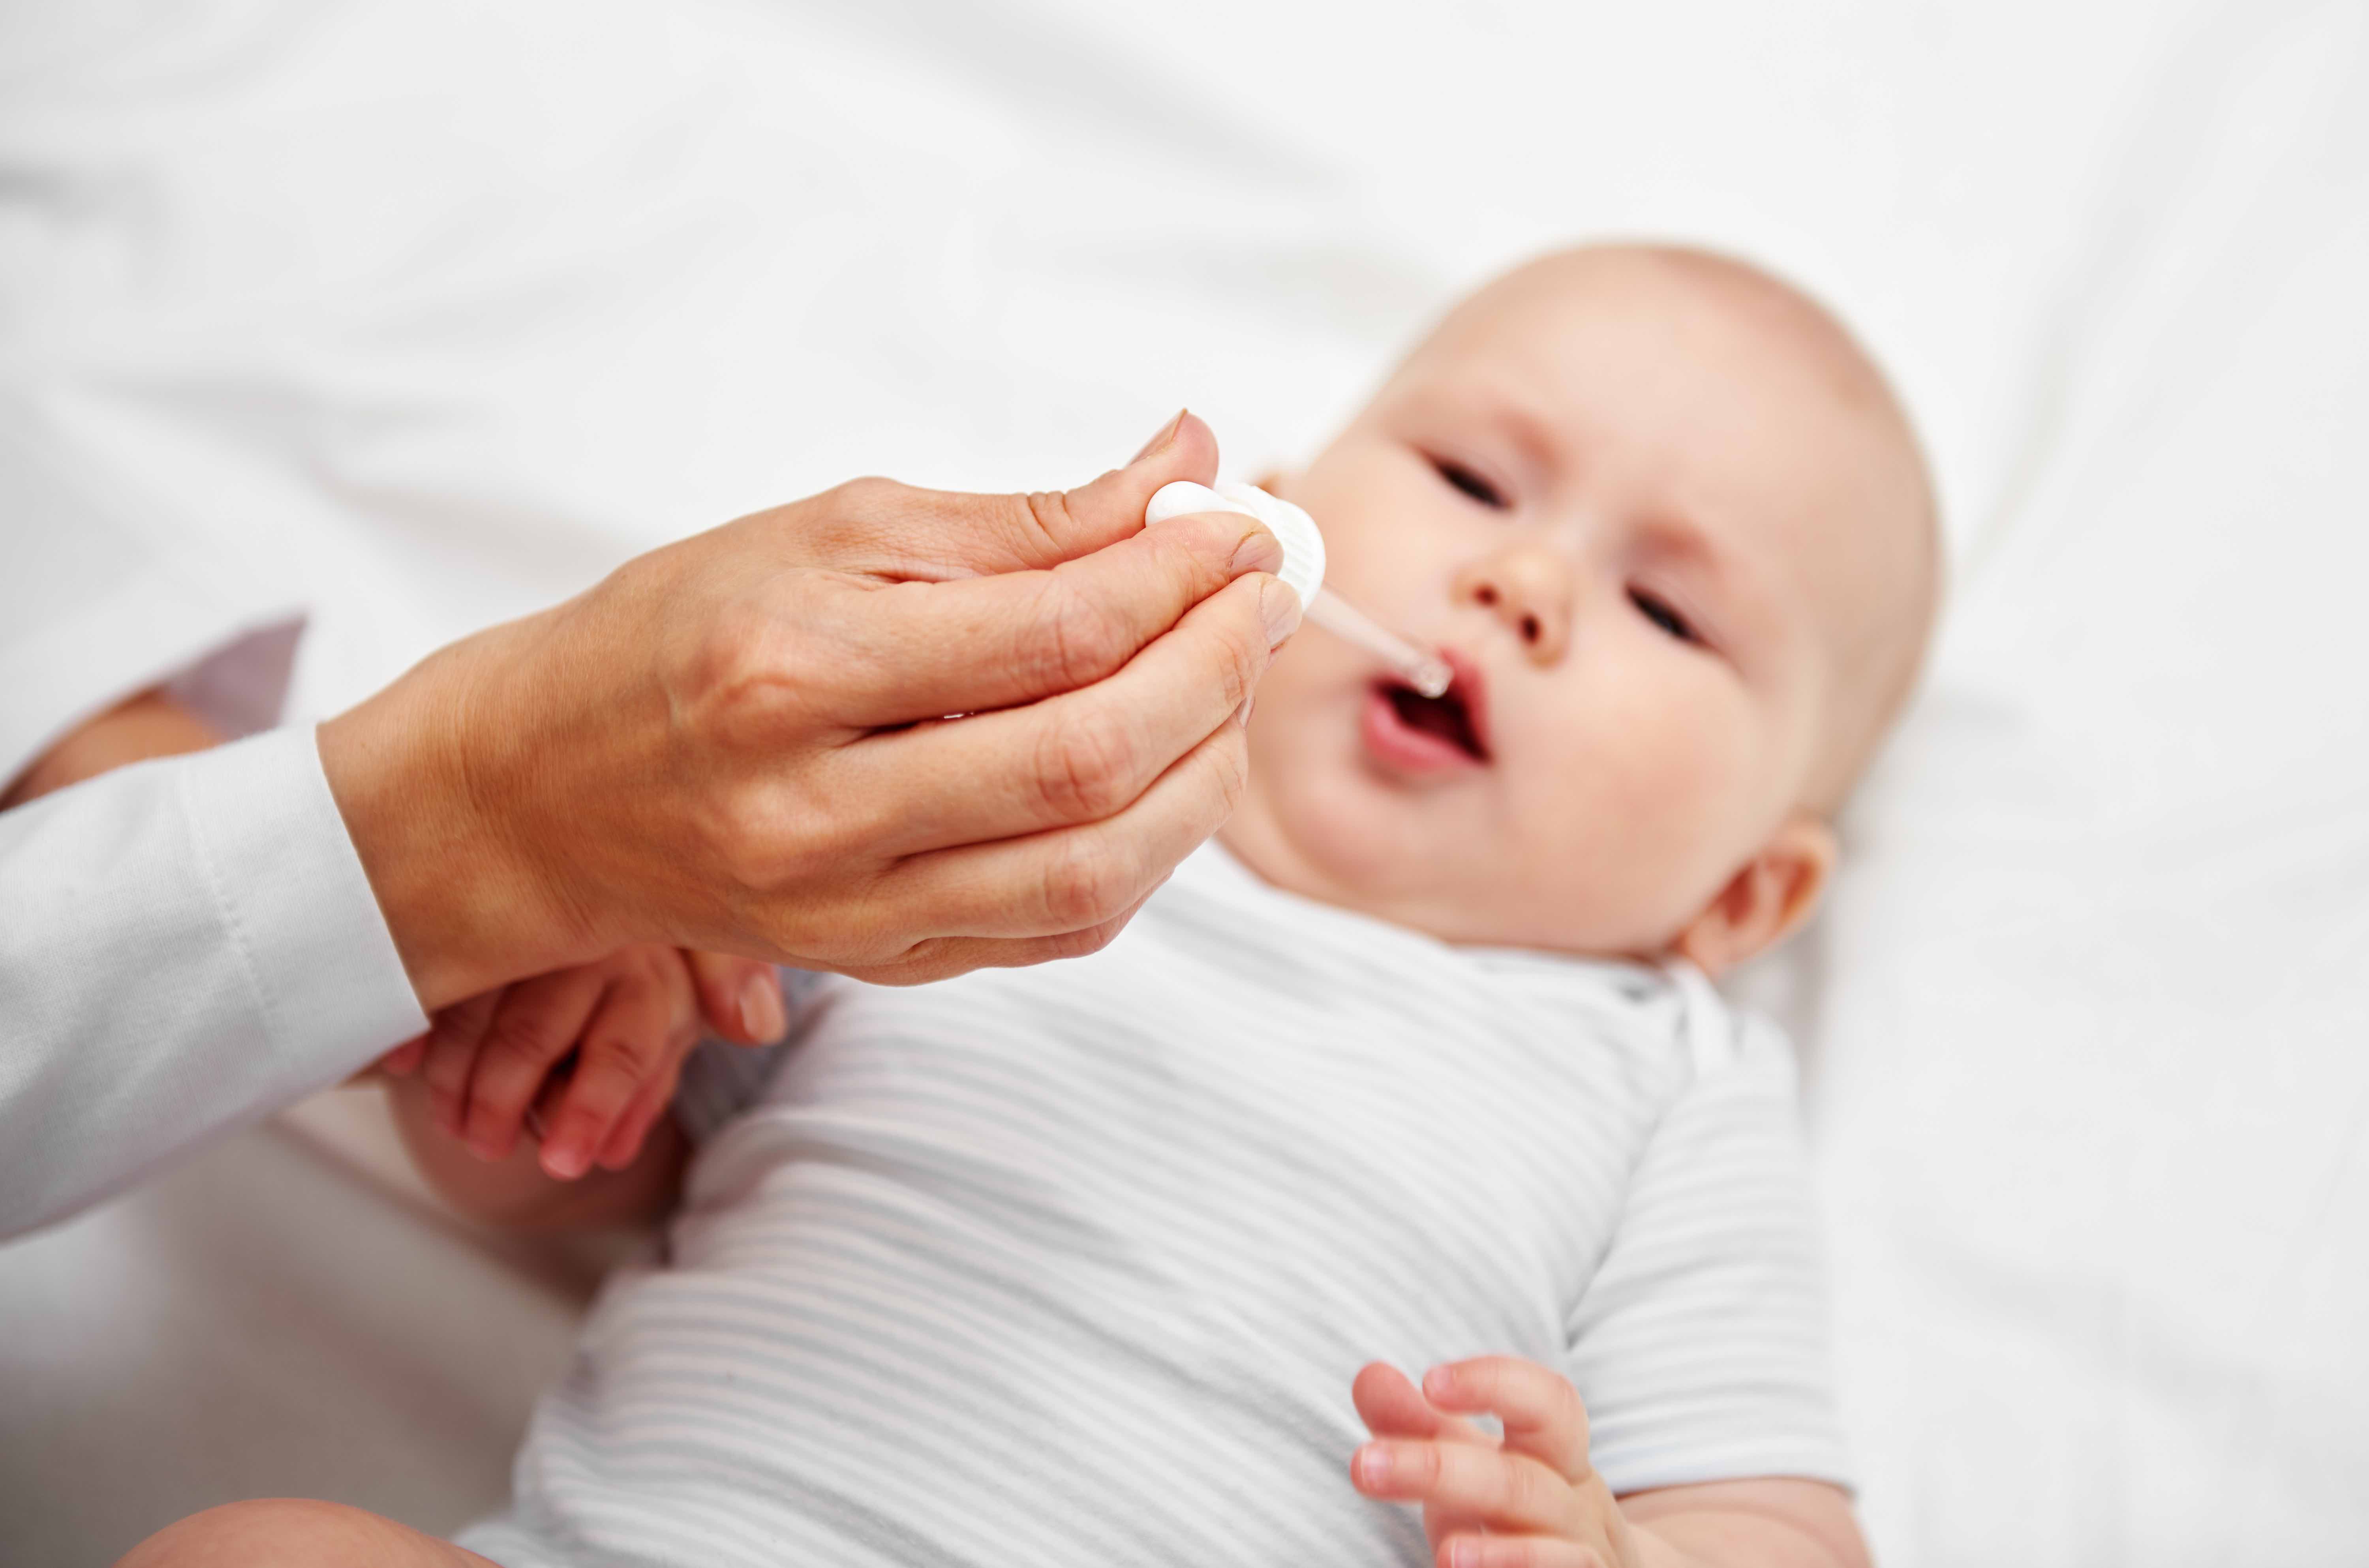 Une supplémentation en vitamine D est recommandée chez les bébés en suivant les recommandations d'un professionnel de la santé. © Stasique, Adobe Stock